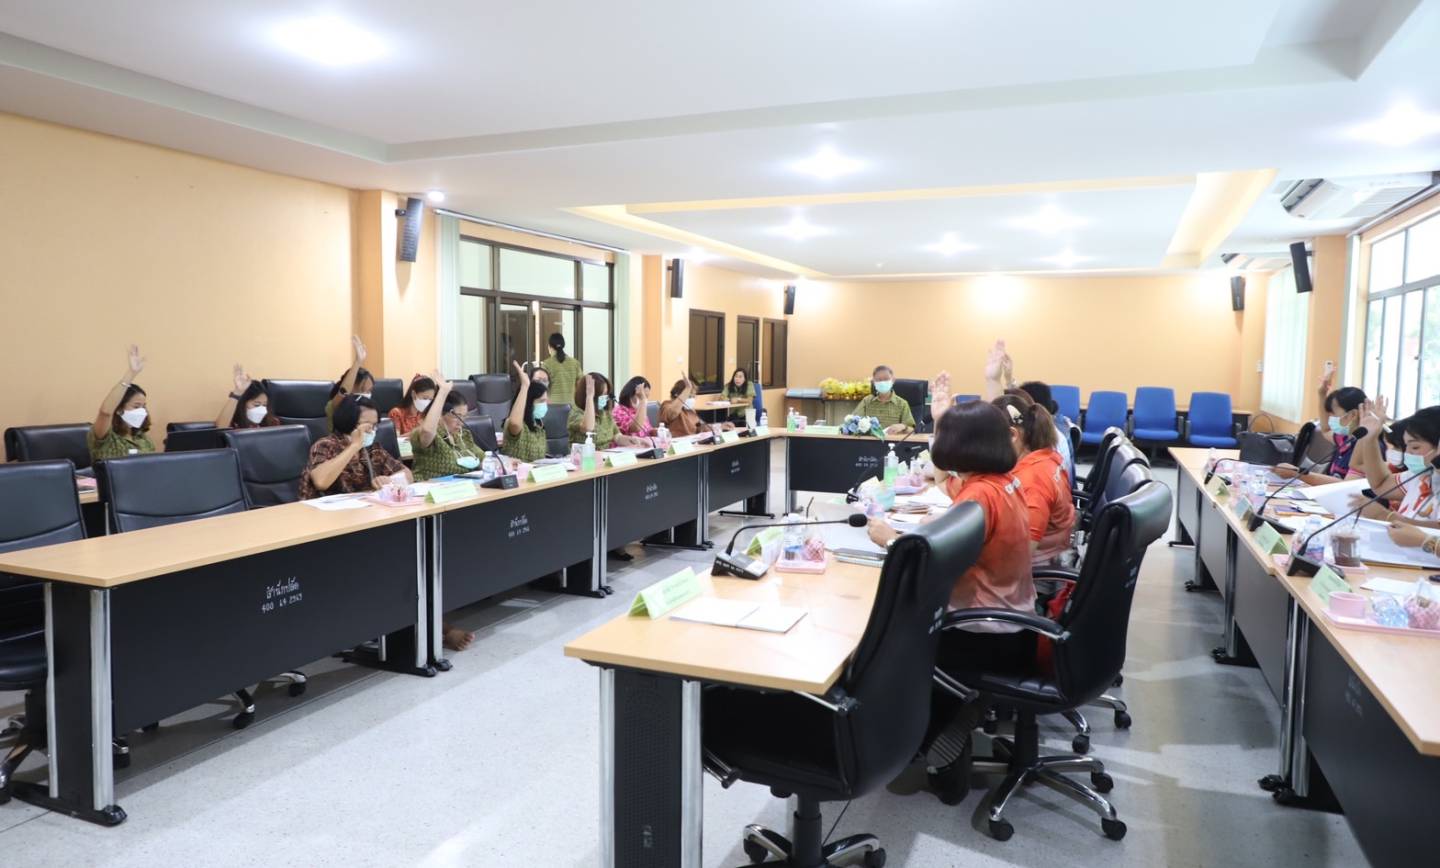 ประชุมคณะอนุกรรมการกองทุนหลักประกันสุขภาพเทศบาลเมืองปากช่อง ครั้งที่ 3/2566